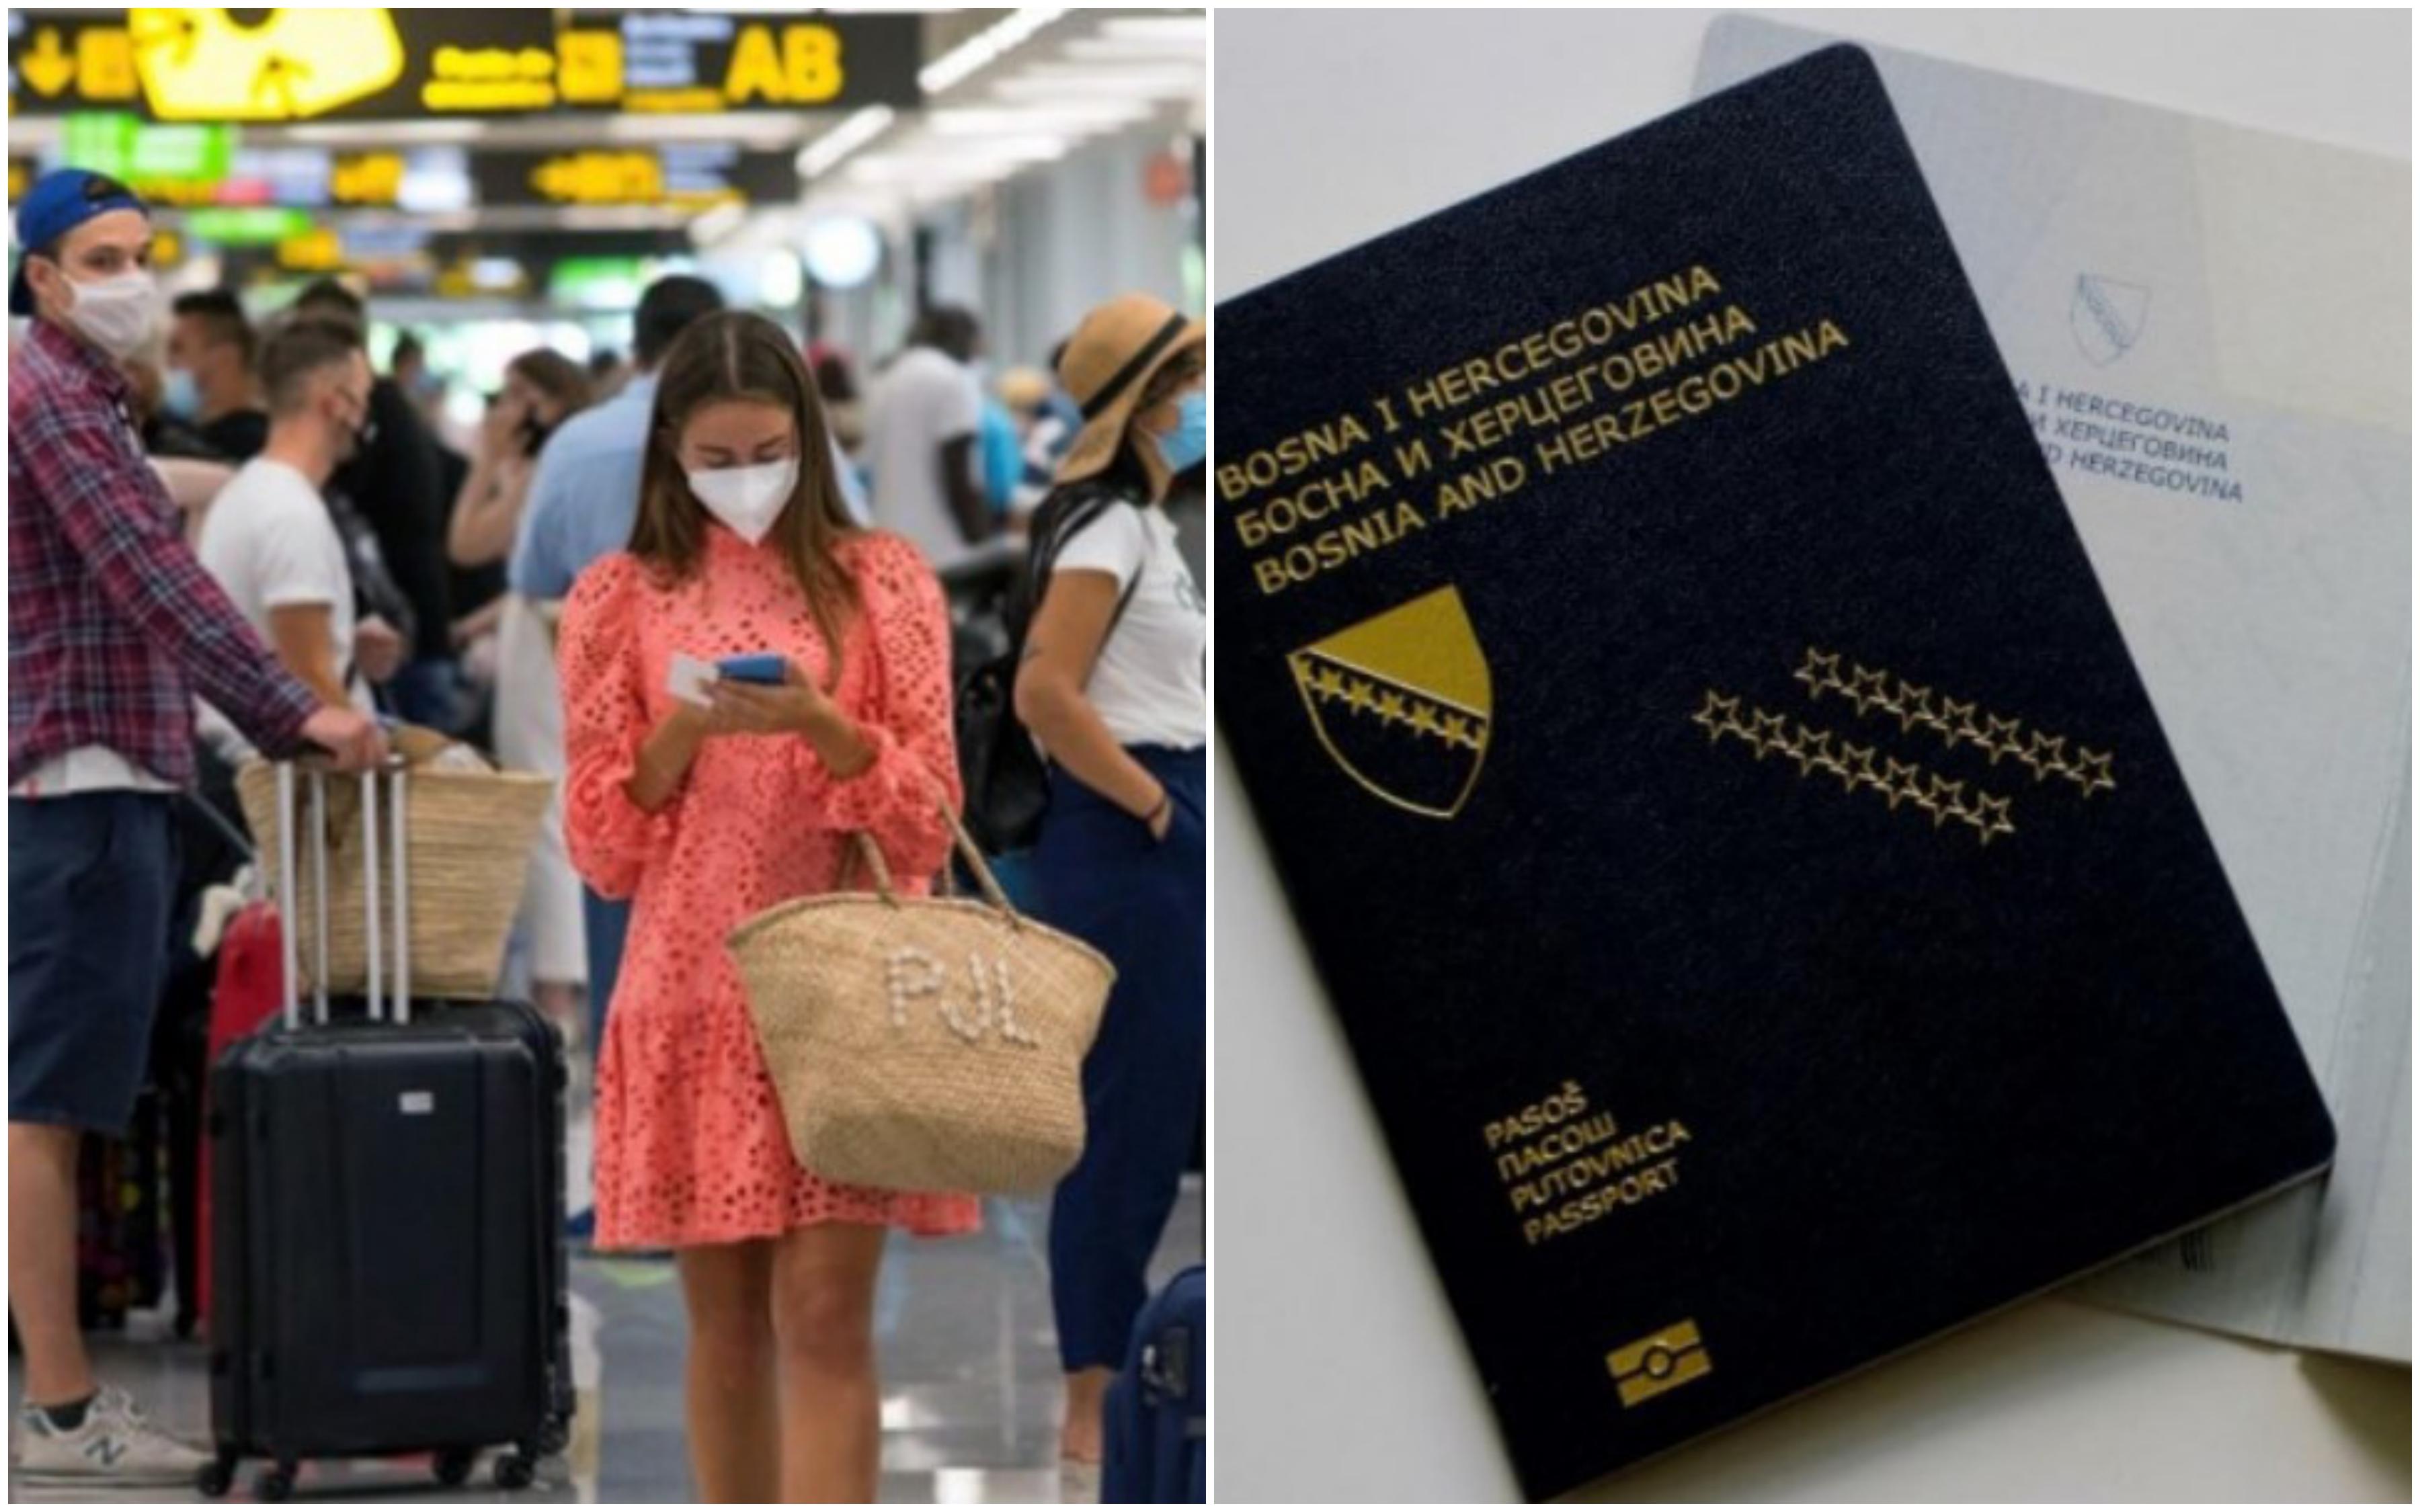 Građani BiH mogu putovati u 94 zemlje svijeta, u 59 bez vize, dok u 35 dobivaju vizu po dolasku - Avaz